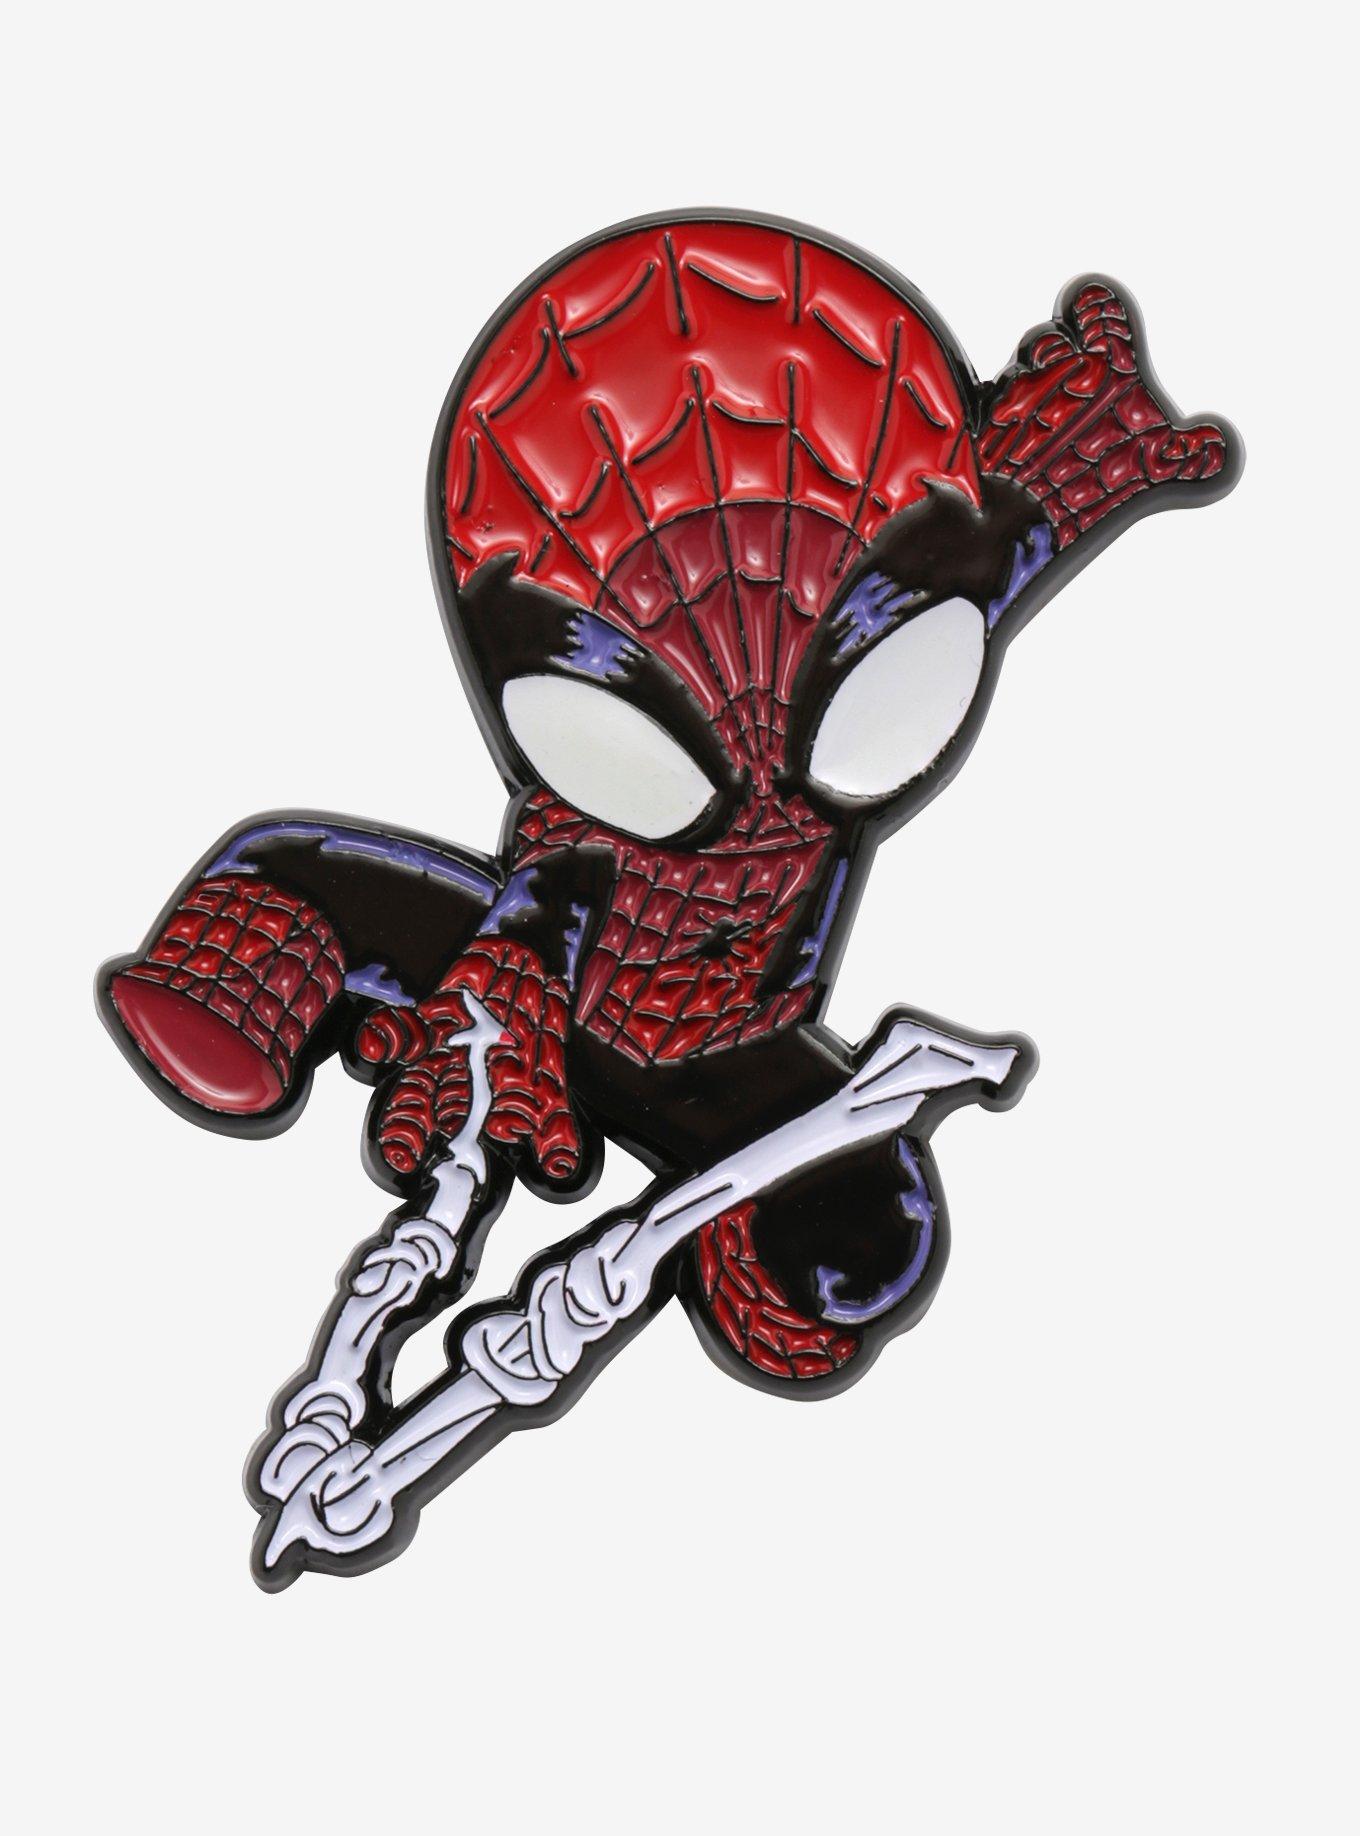 Pin by Gabi-TH on Spider-Man  Spiderman, Spider venom, Marvel